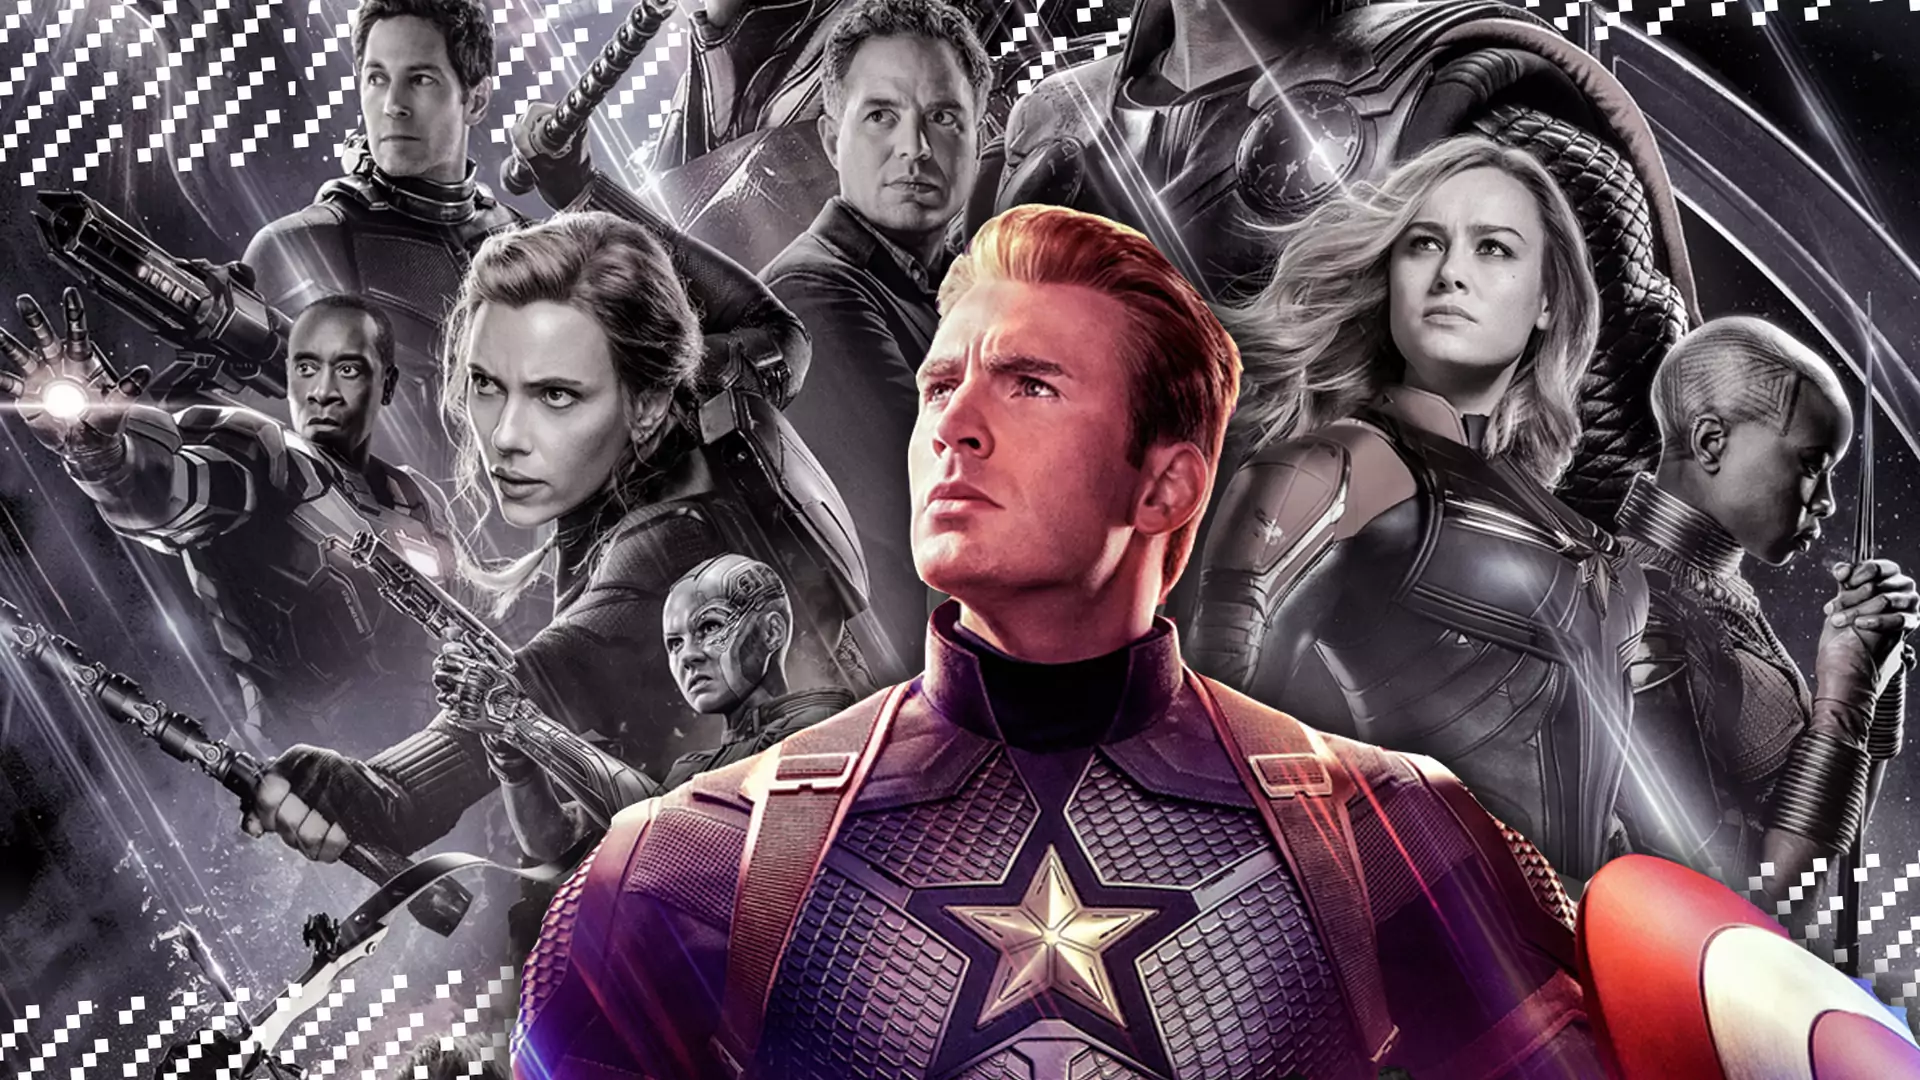 Piękny koniec opowieści, którą pokochały miliony - recenzja "Avengers: Endgame"